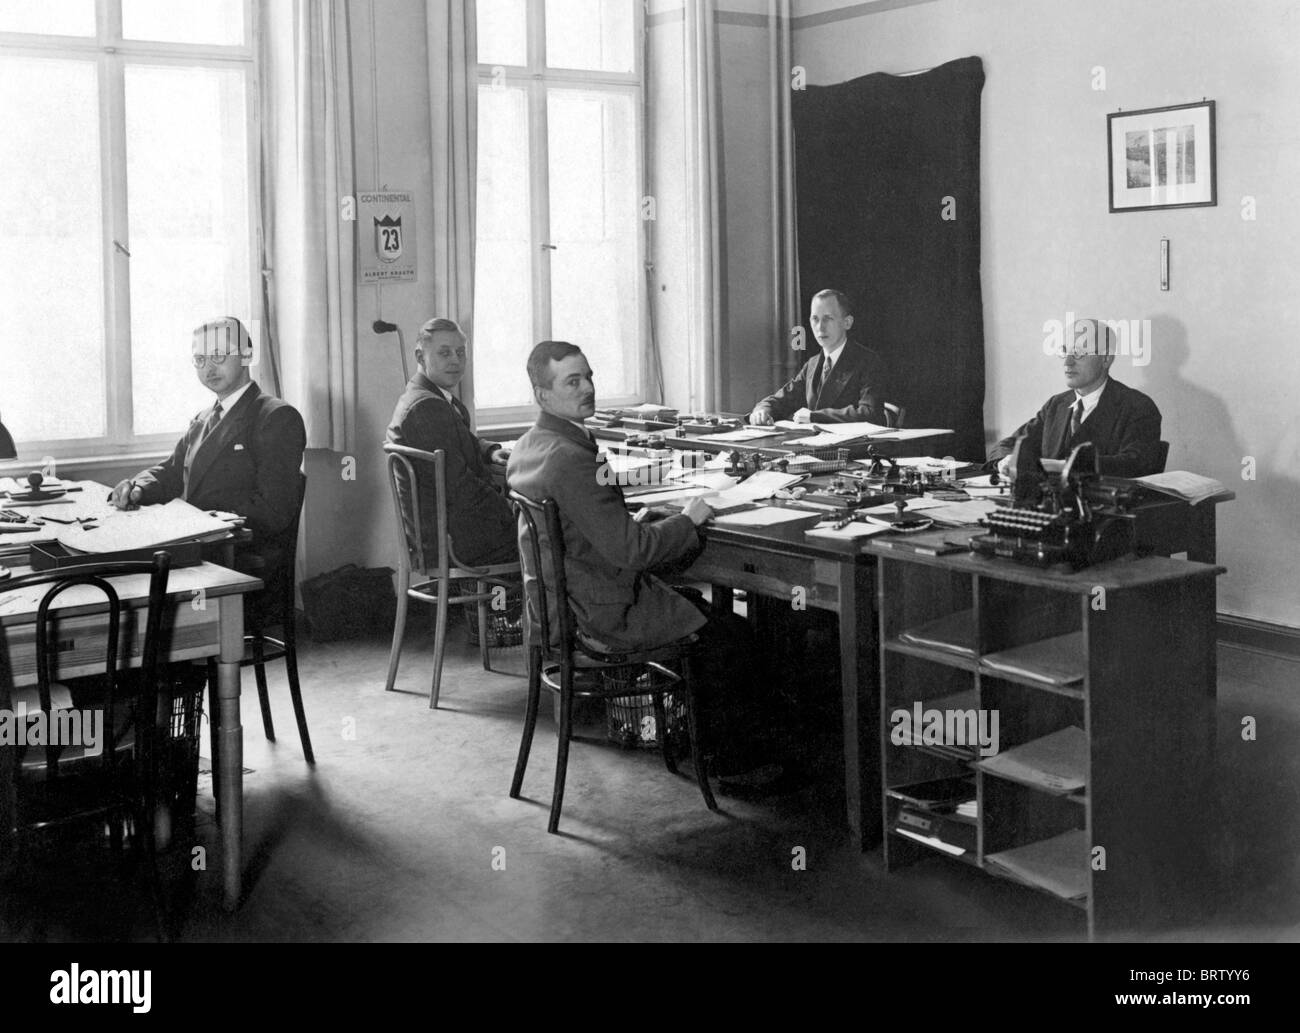 Cinco hombres que trabajan en una oficina, imagen histórica, ca. 1930 Foto de stock